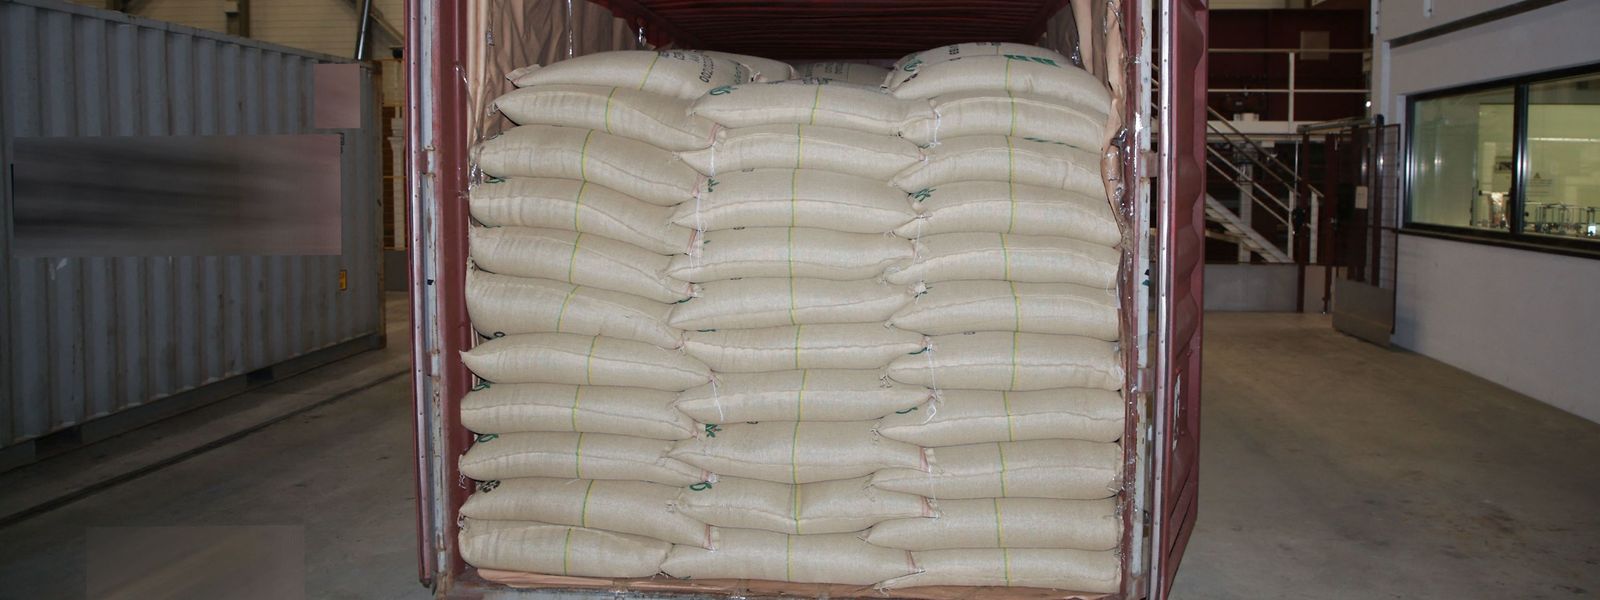 Dieses von der Schweizer Polizei veröffentlichte Foto zeigt die Lieferung an eine Nespresso-Fabrik in Romont, in denen mehr als 500 Kilogramm Kokain gefunden wurden.